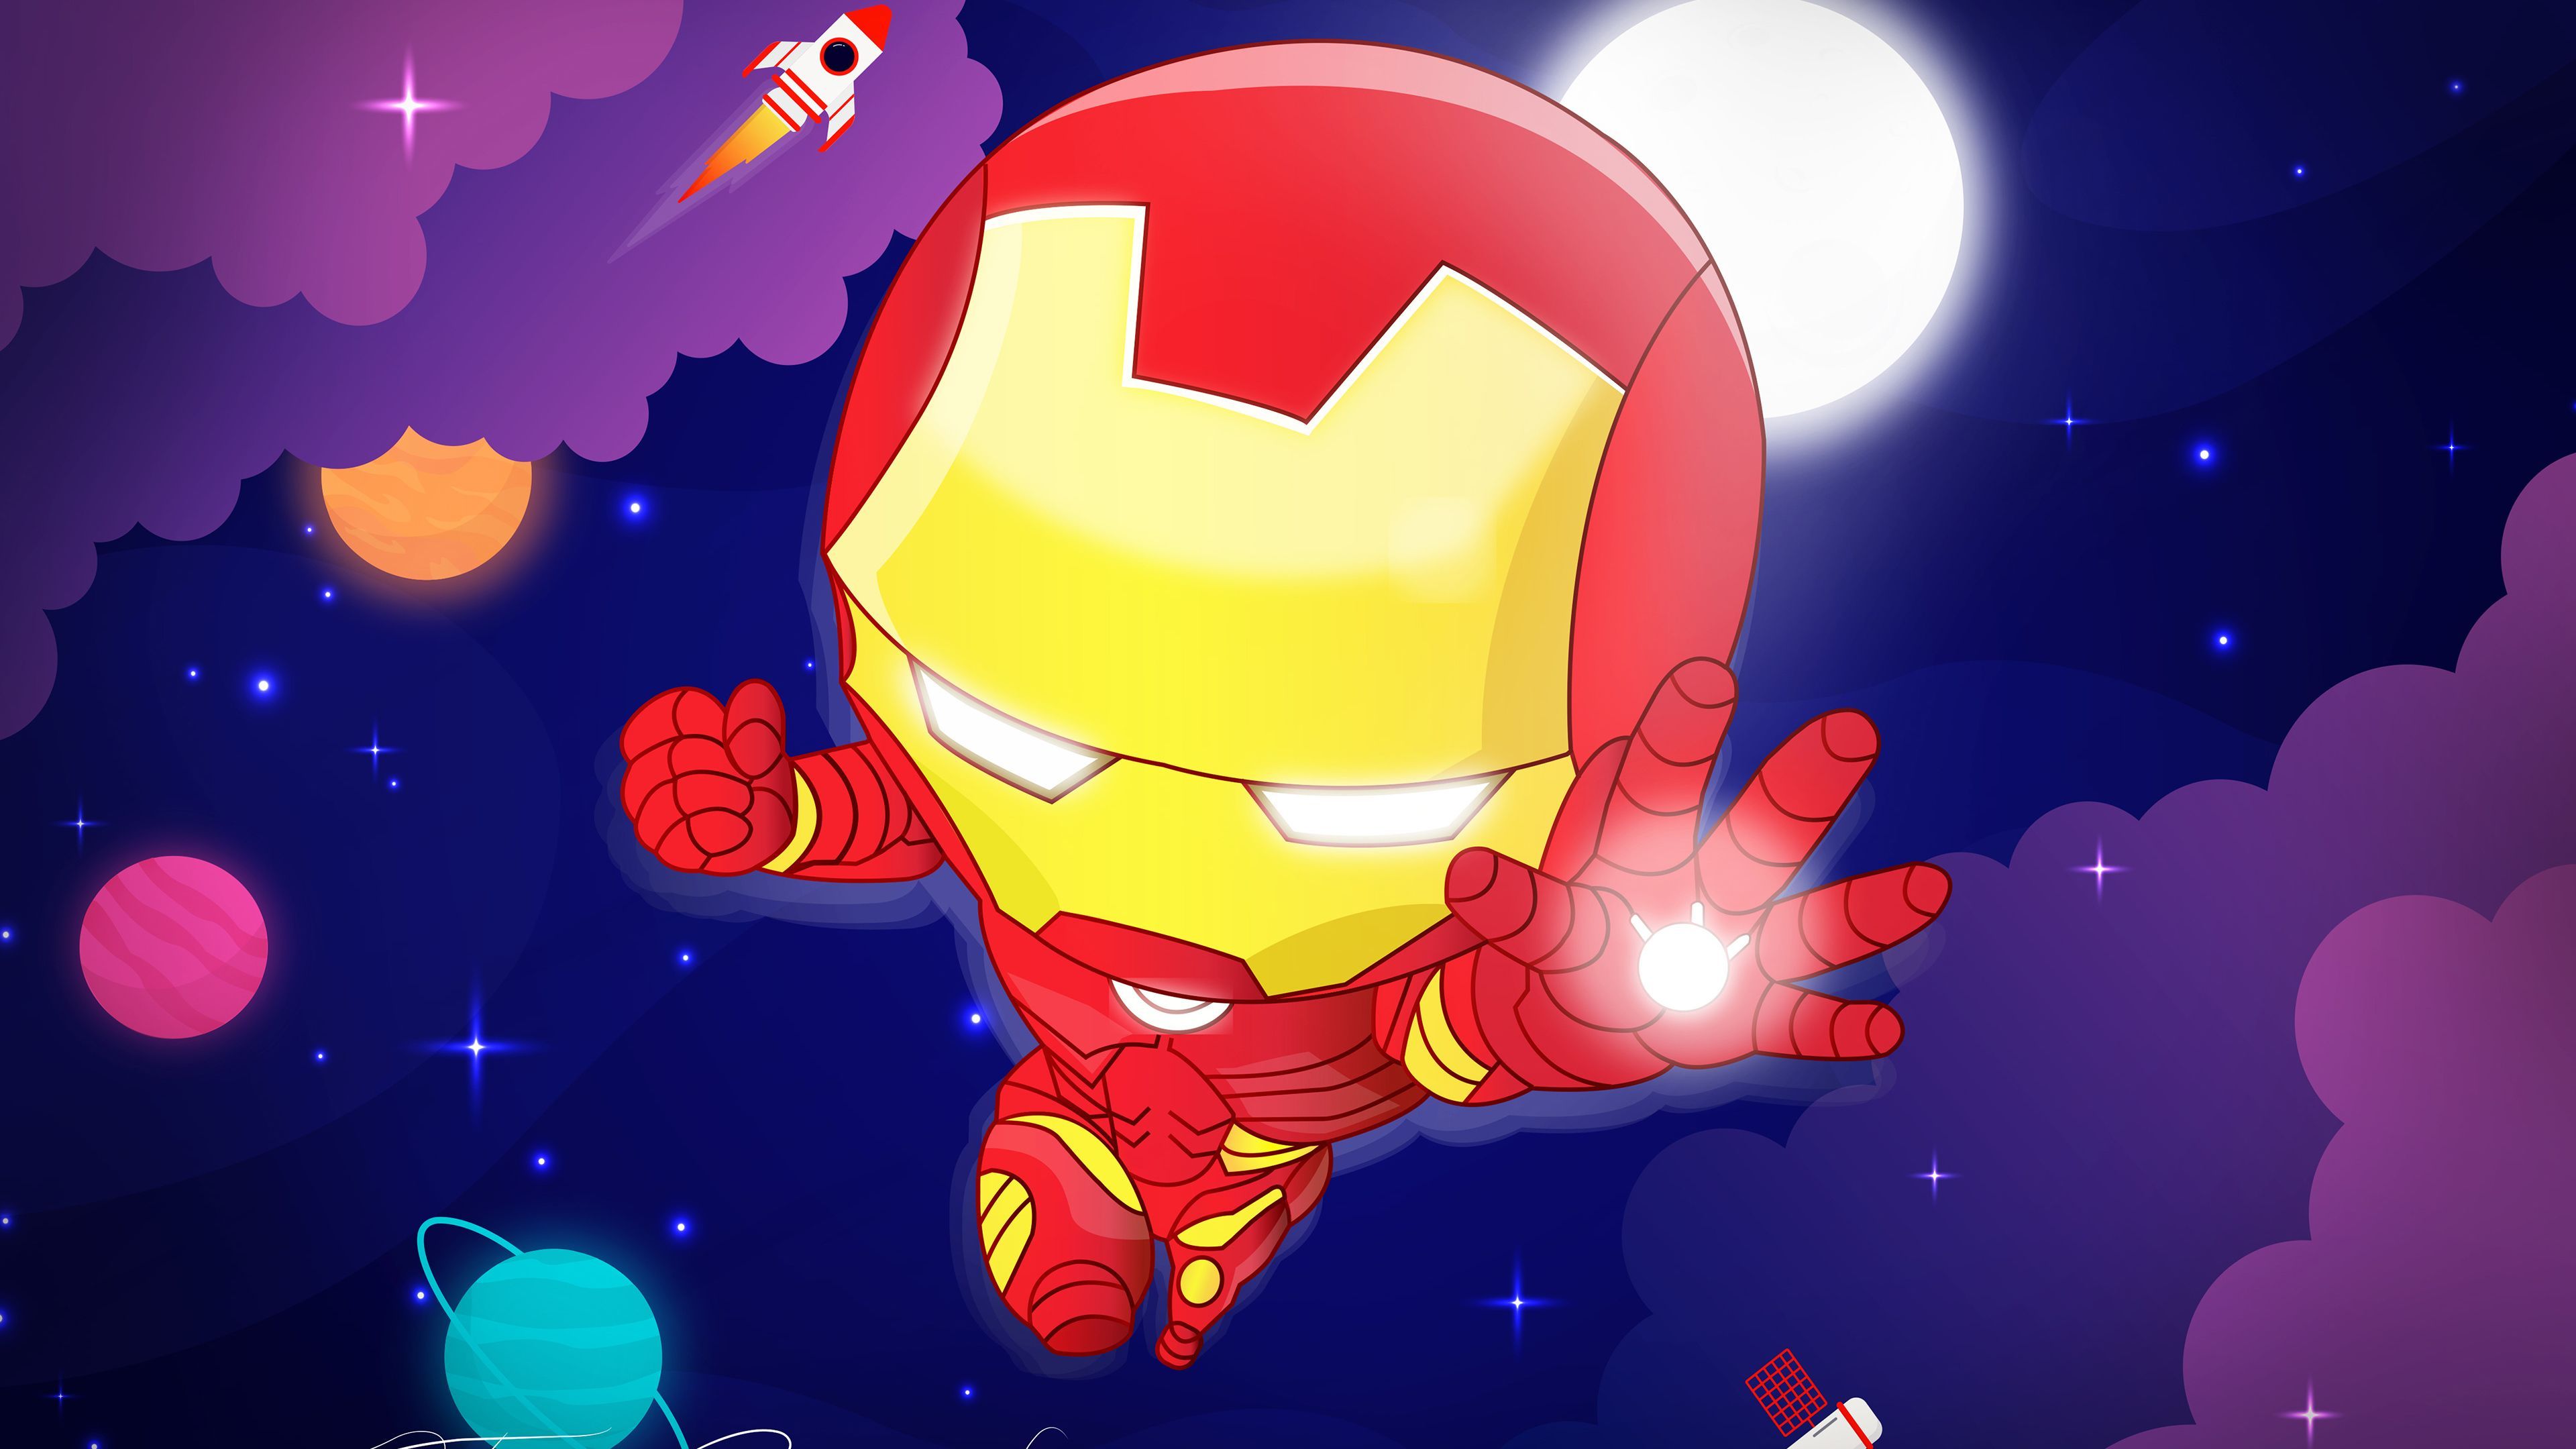 Chibi Iron Man 4k Superheroes Wallpaper, Iron Man Wallpaper, Hd Wallpaper, Digital Art Wallpaper, Behance Wallpaper, Artwork. Iron Man, Hero Wallpaper, Chibi